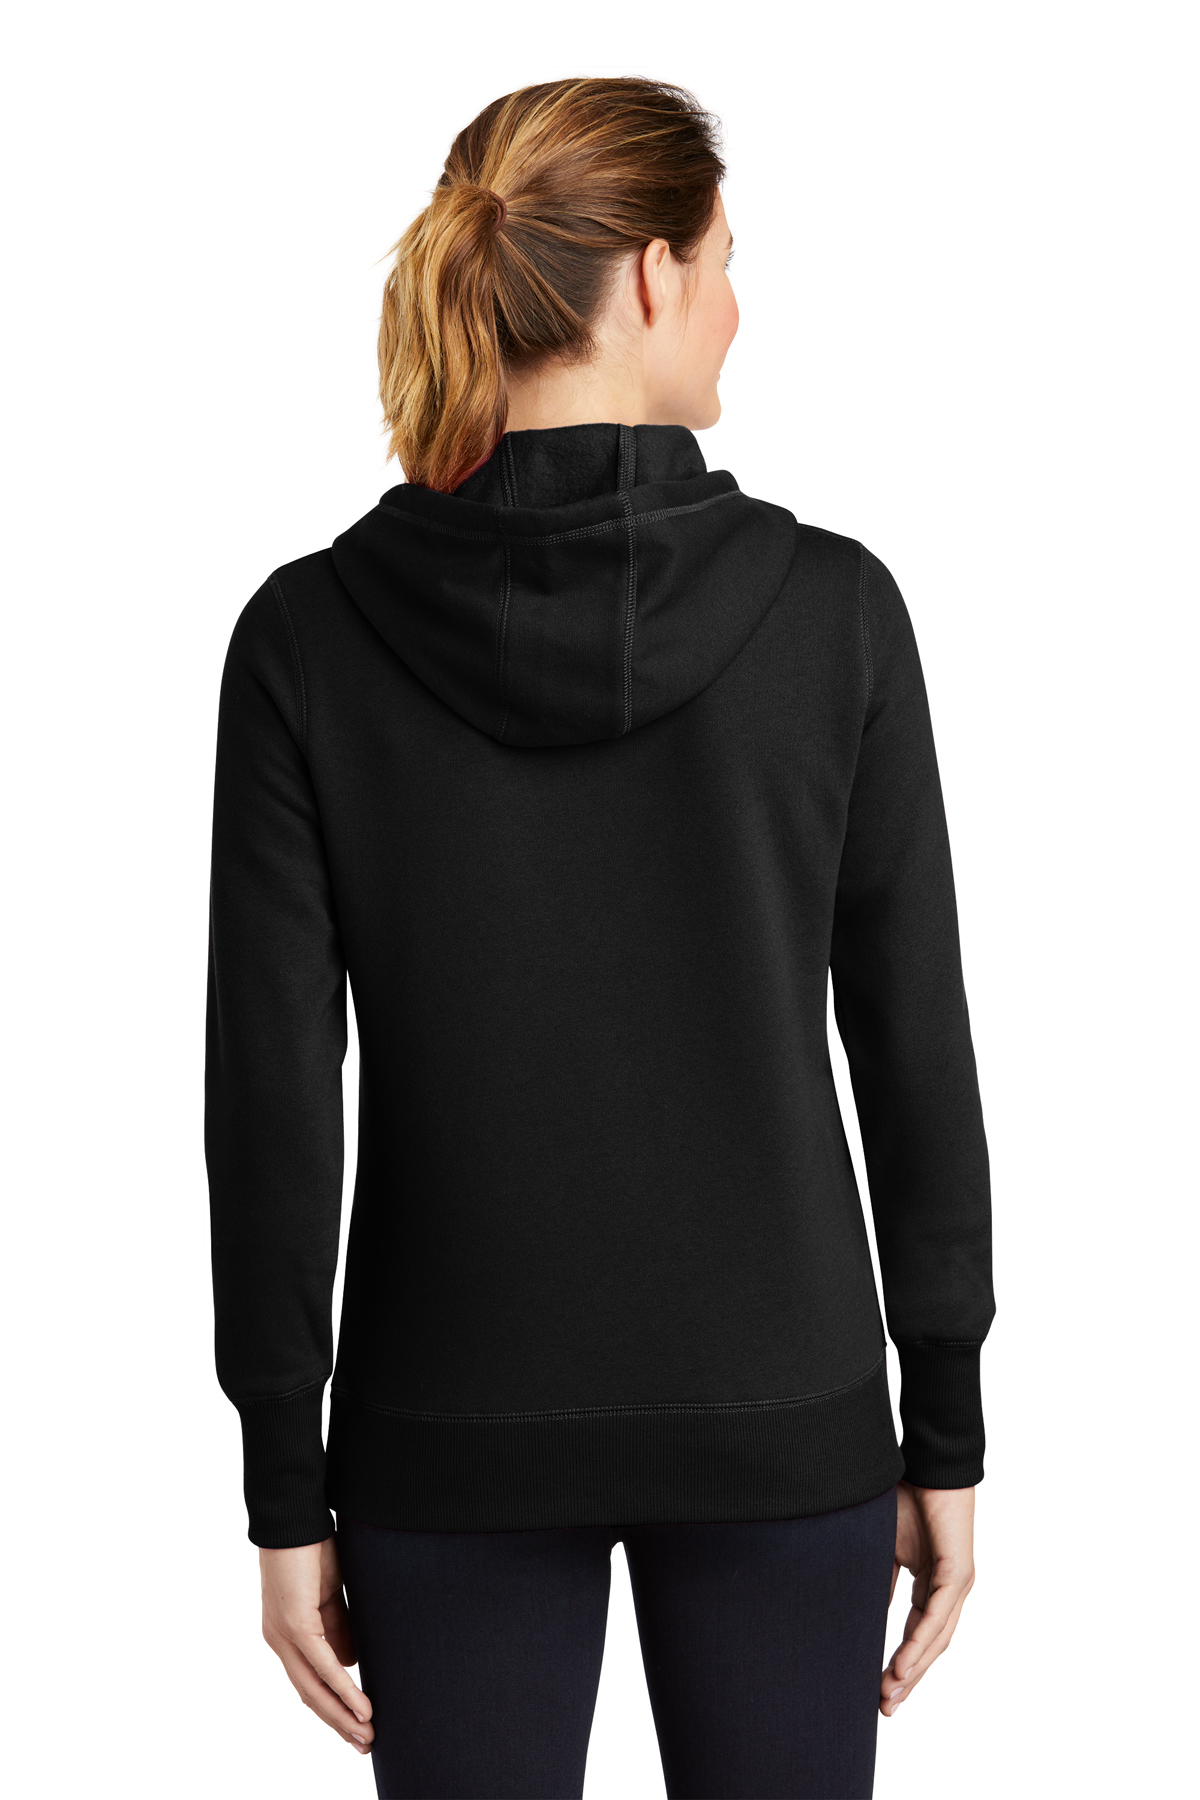 Sport-Tek Ladies Pullover Hooded Sweatshirt | Product Sport-Tek 